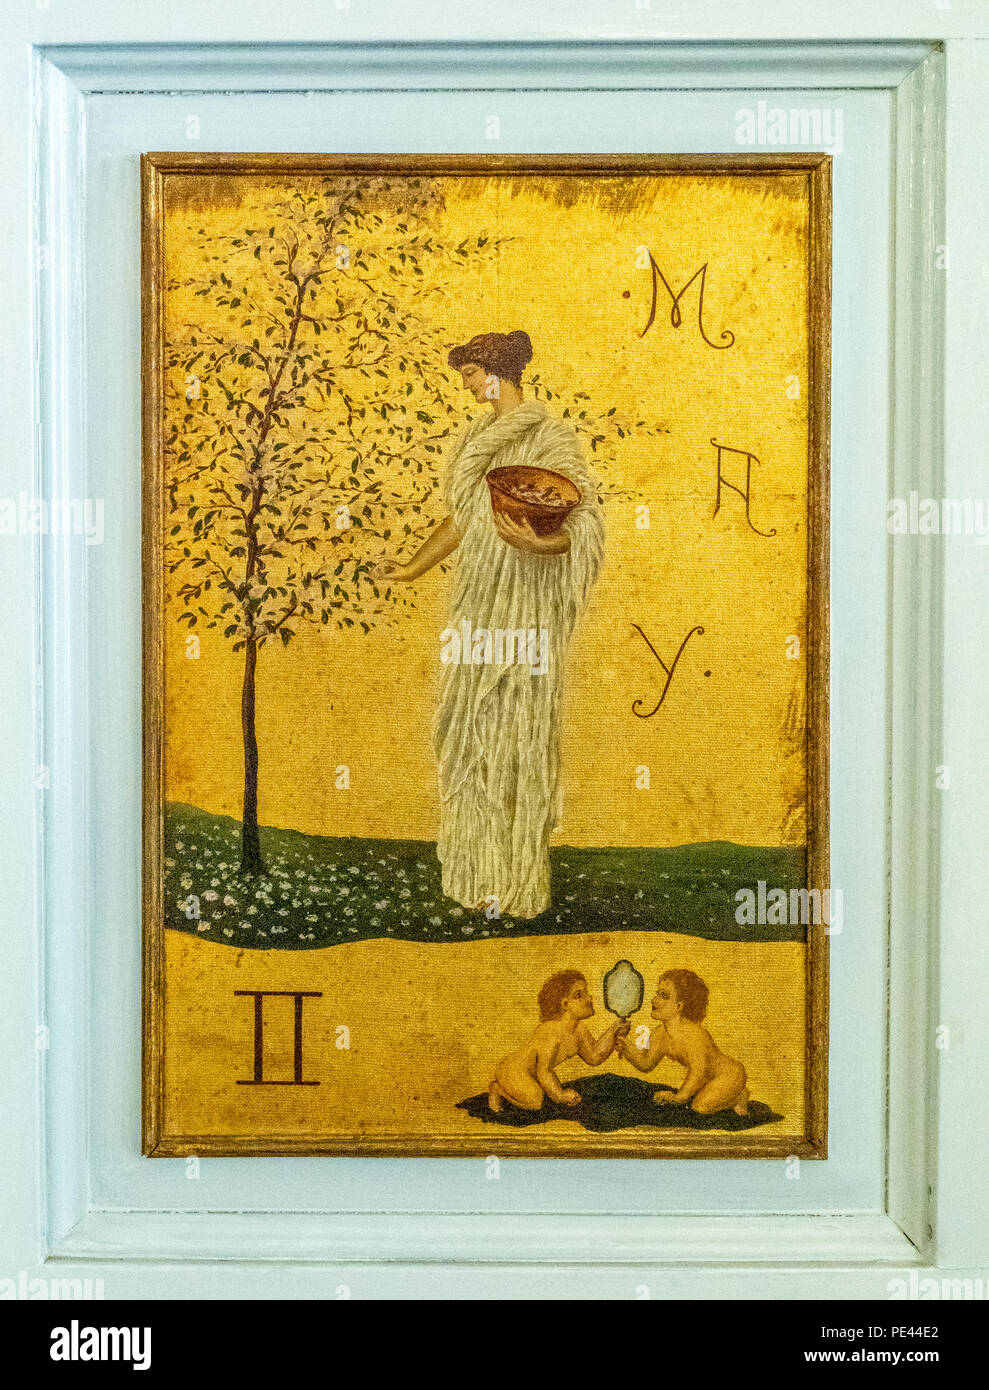 Les panneaux de porte dans le carré de la Dublin Writers Museum peint sur feuille d'or montrant des femmes représentant classique mélancolique Mois de l'année et zodiac Banque D'Images